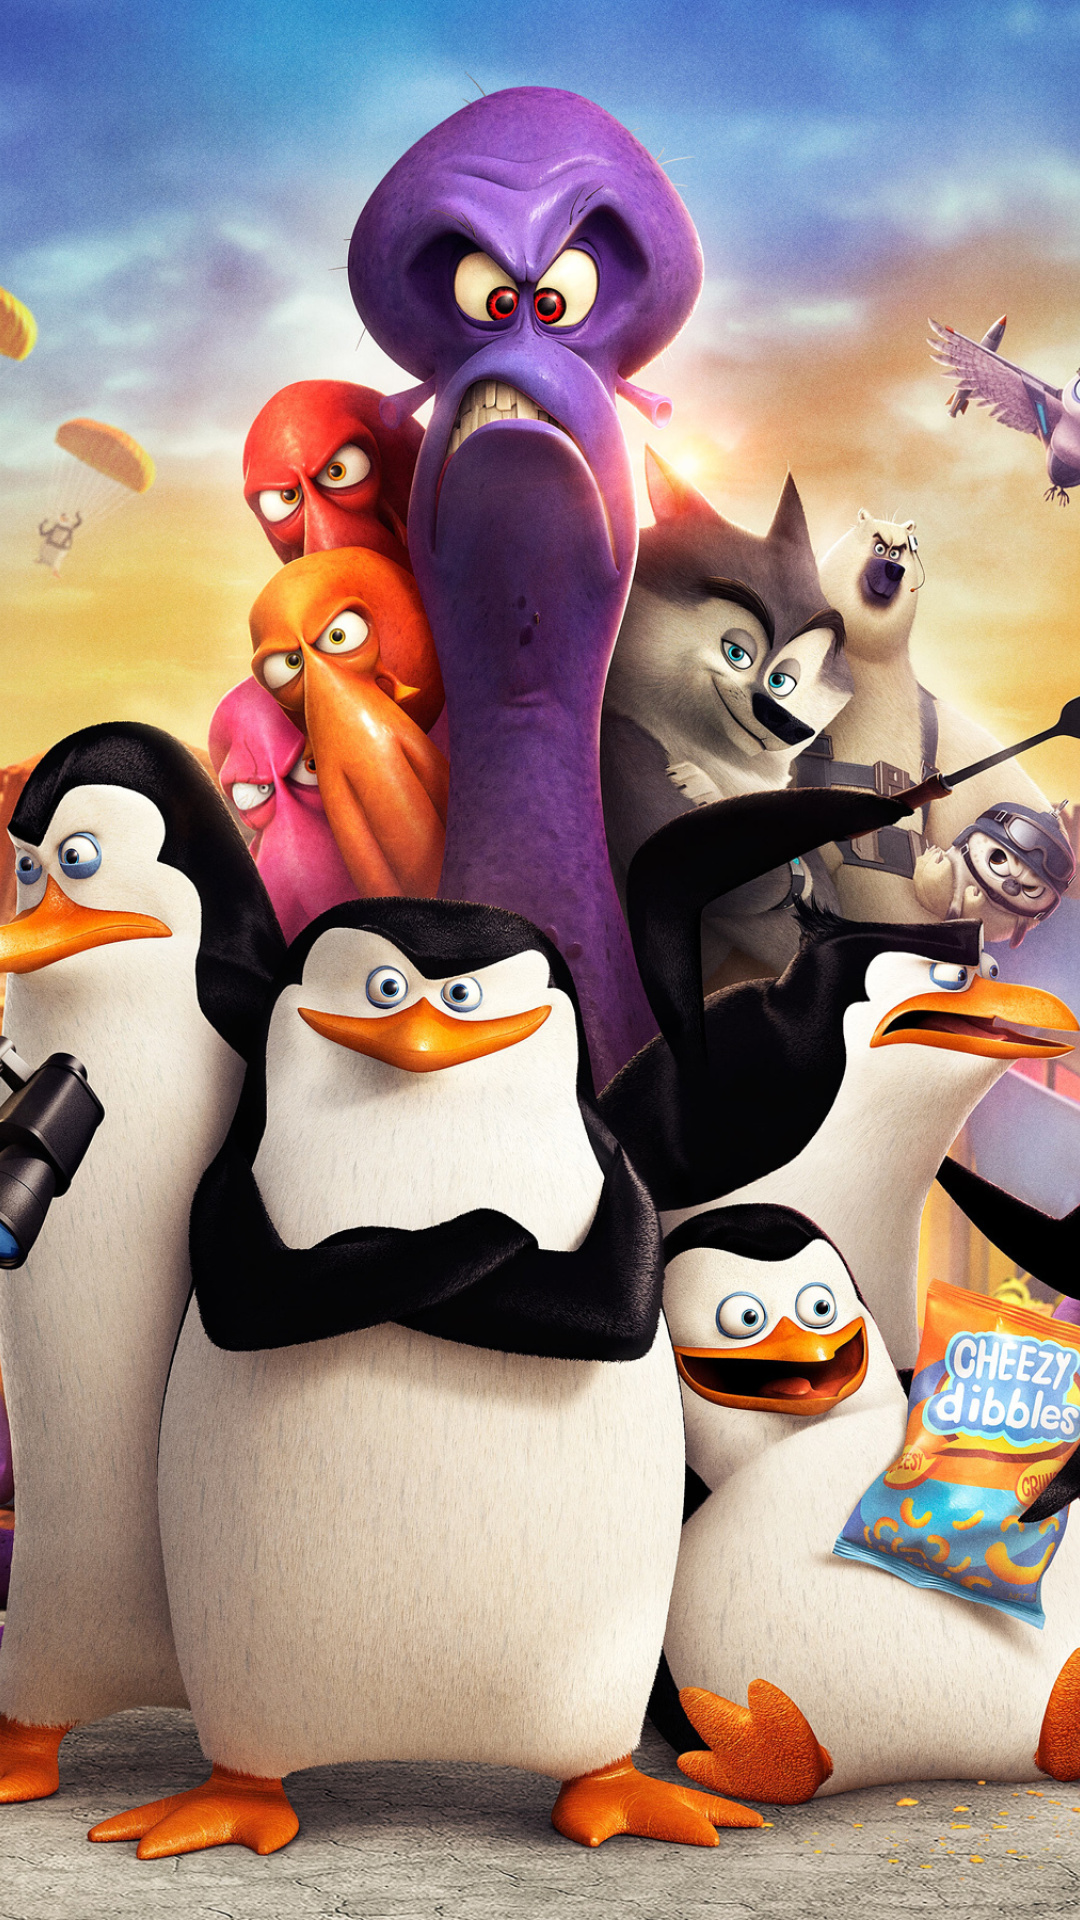 Das The Penguins of Madagascar 2014 Wallpaper 1080x1920